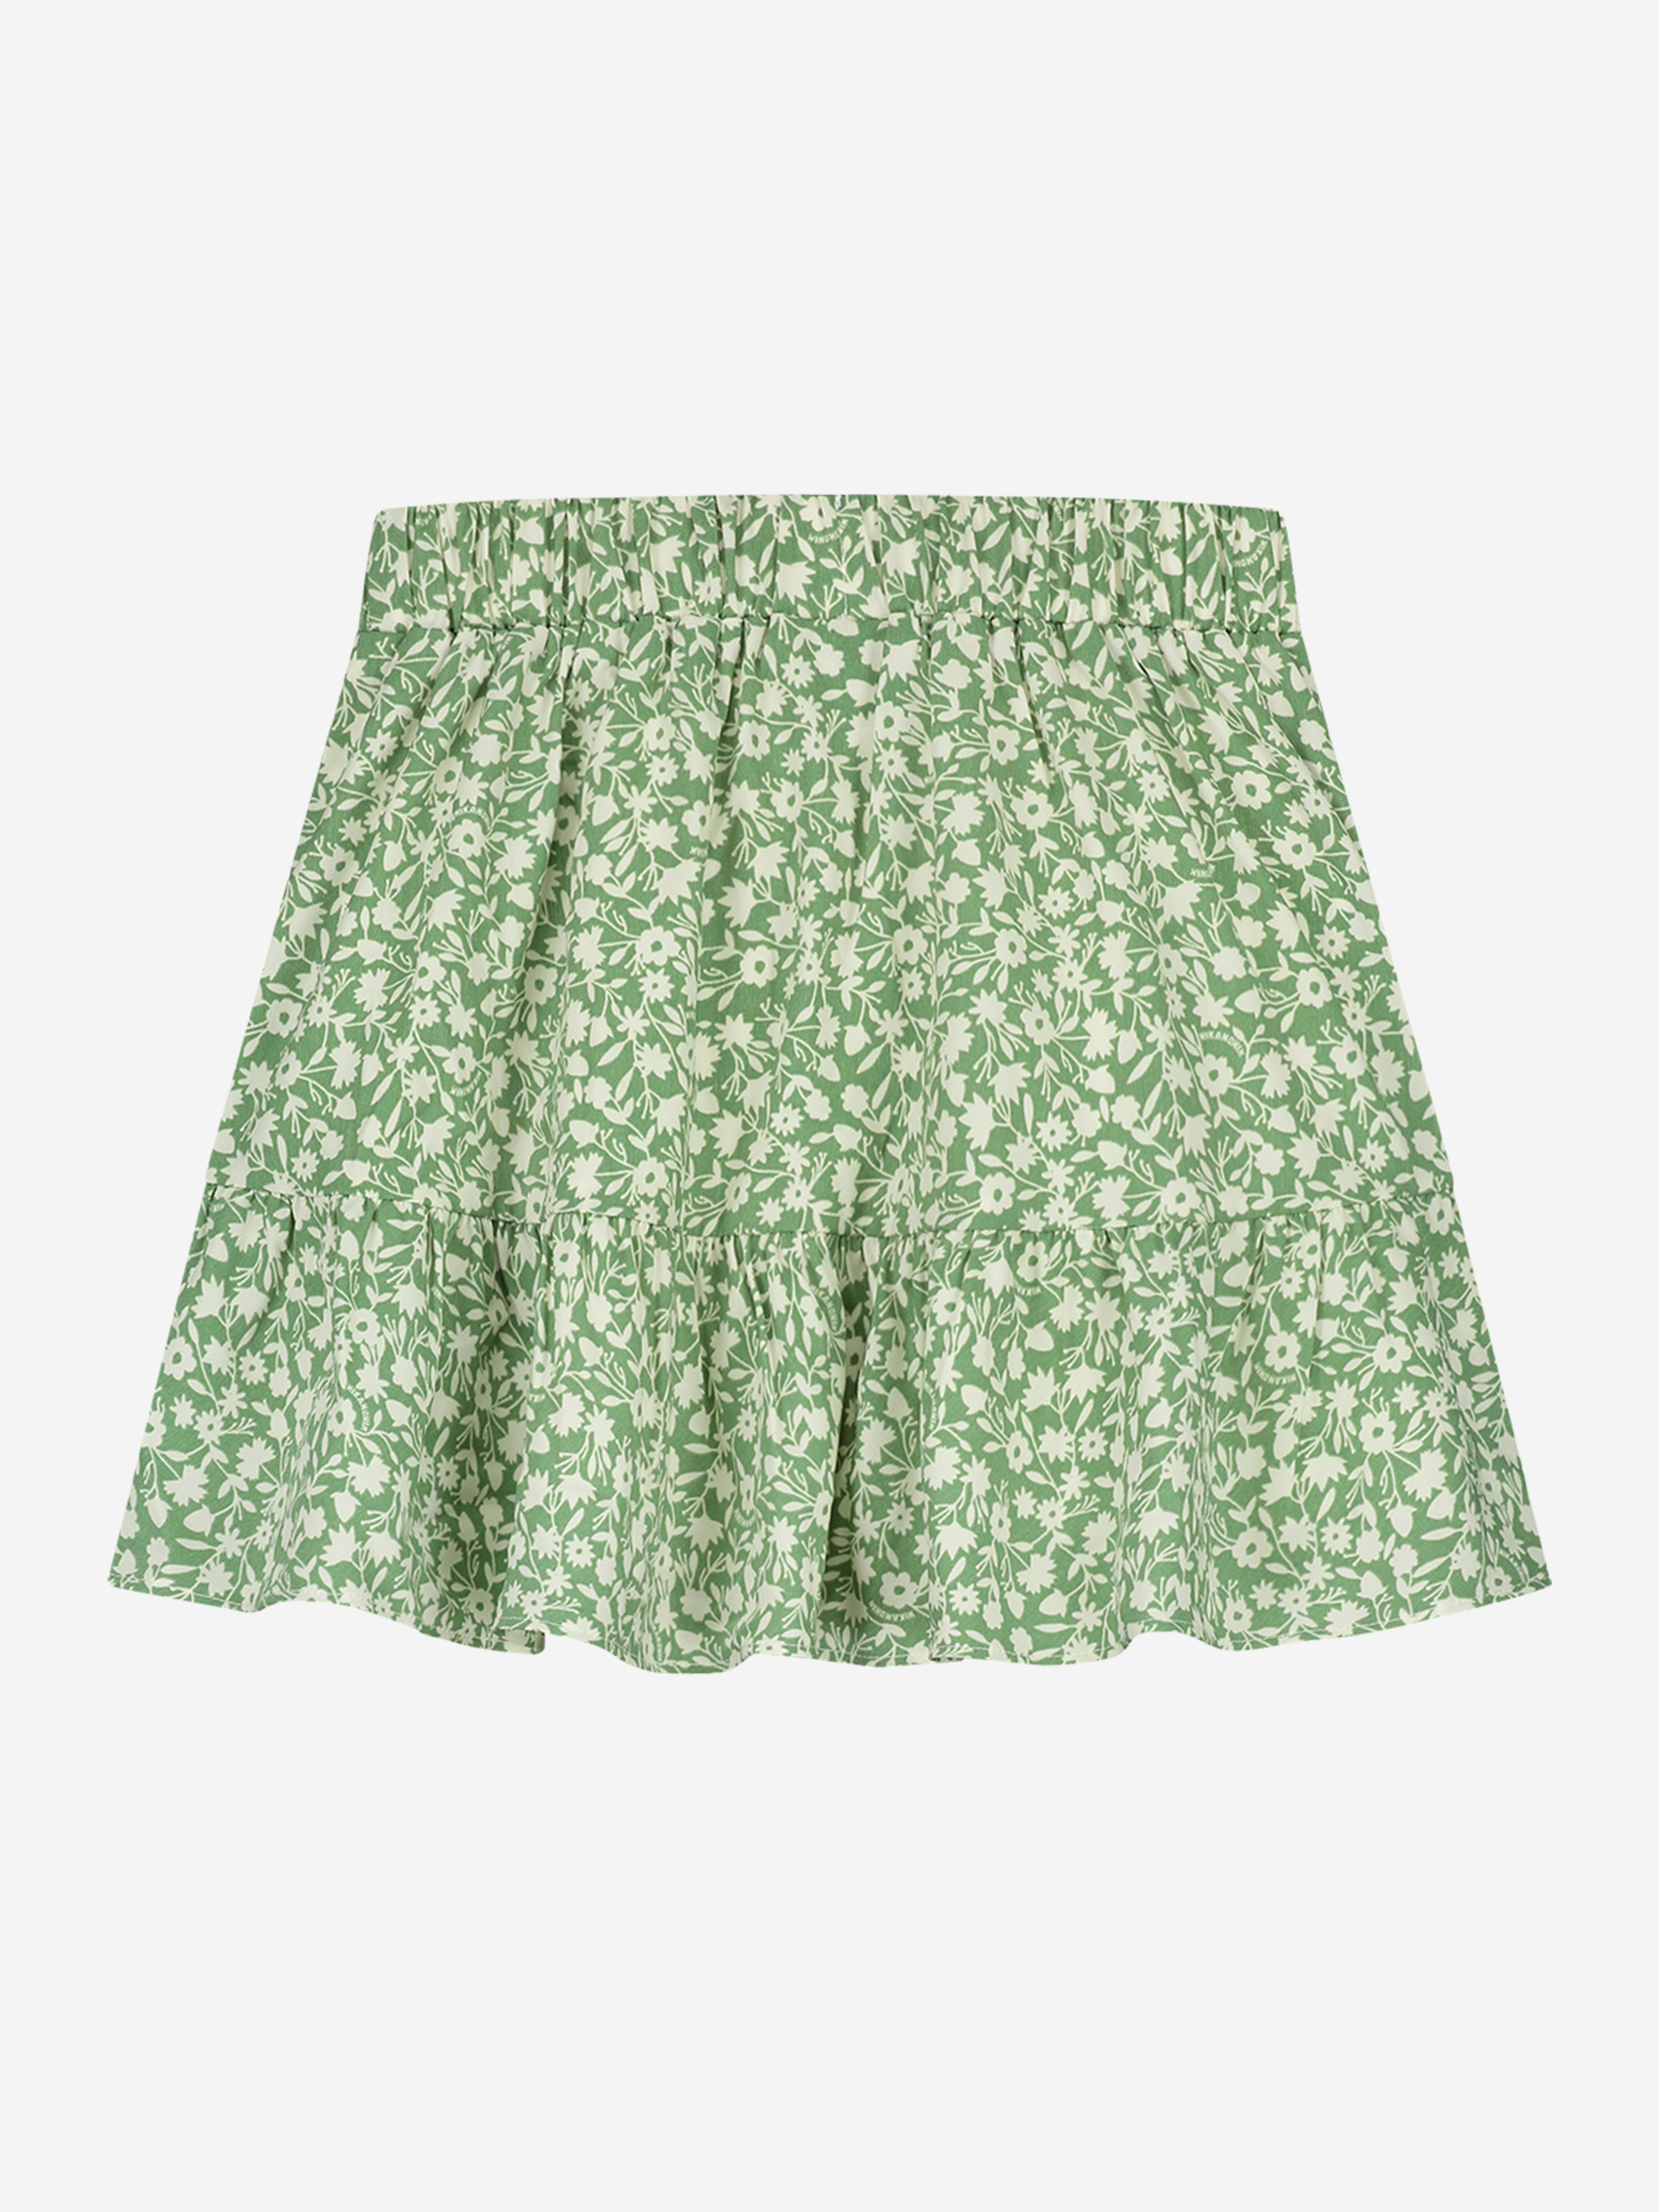 Milly Skirt